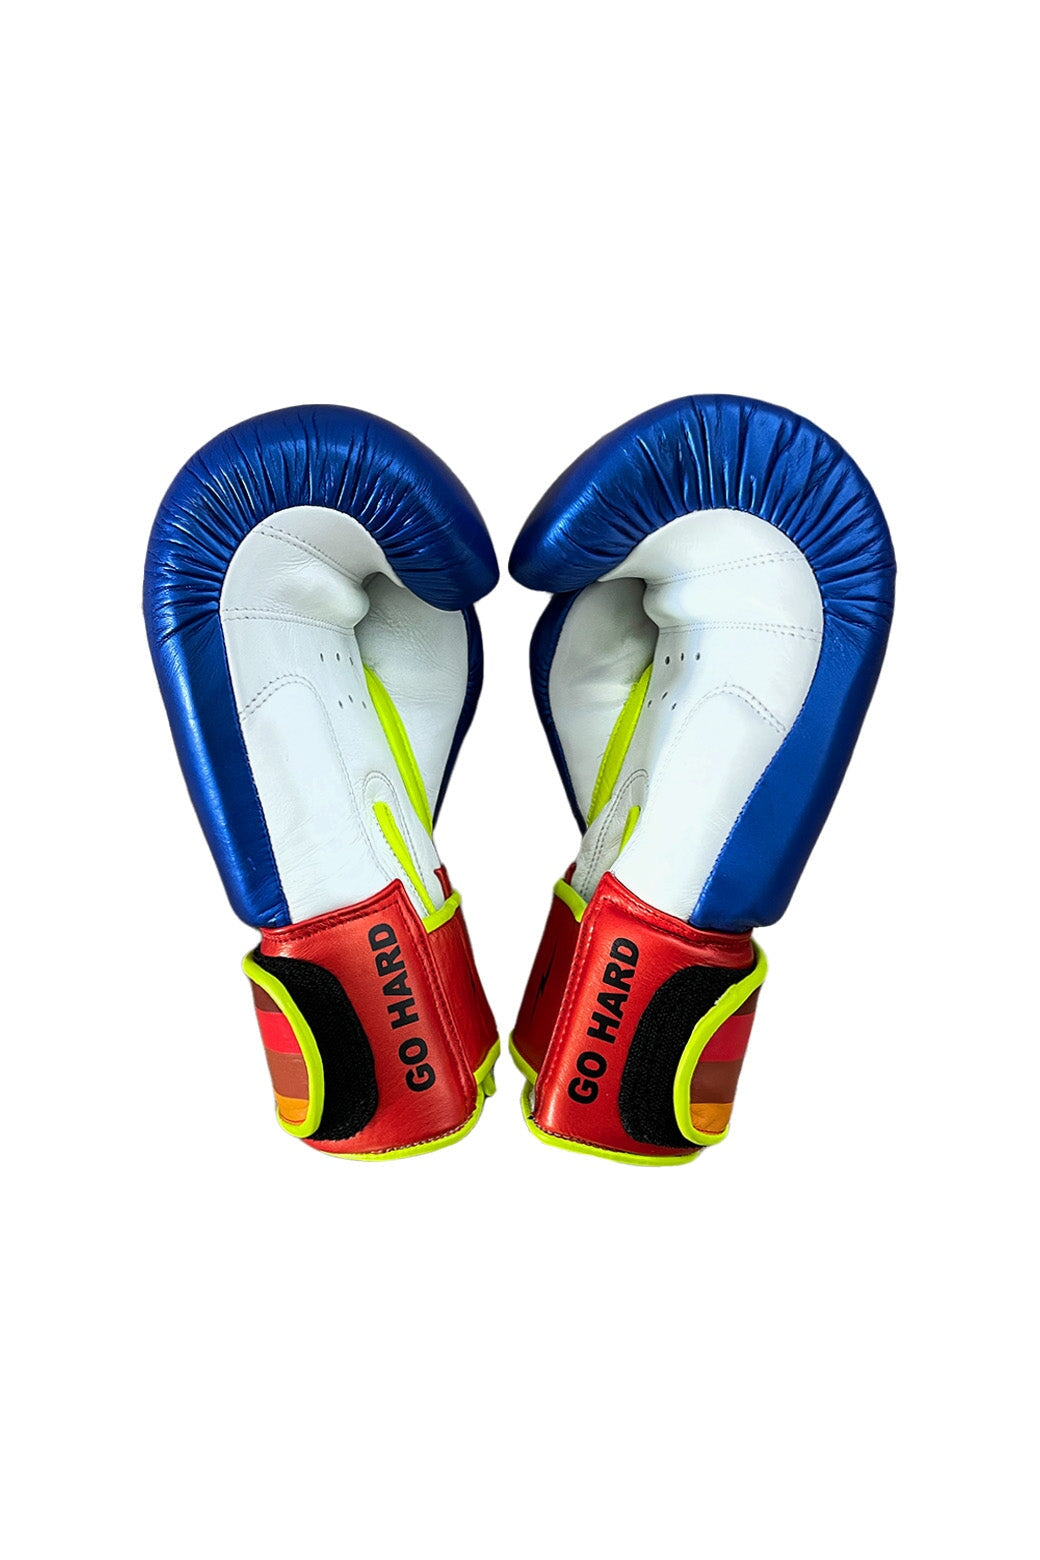 BOXING GLOVES - BLUE // WHITE Boxing Gloves Aviator Nation 